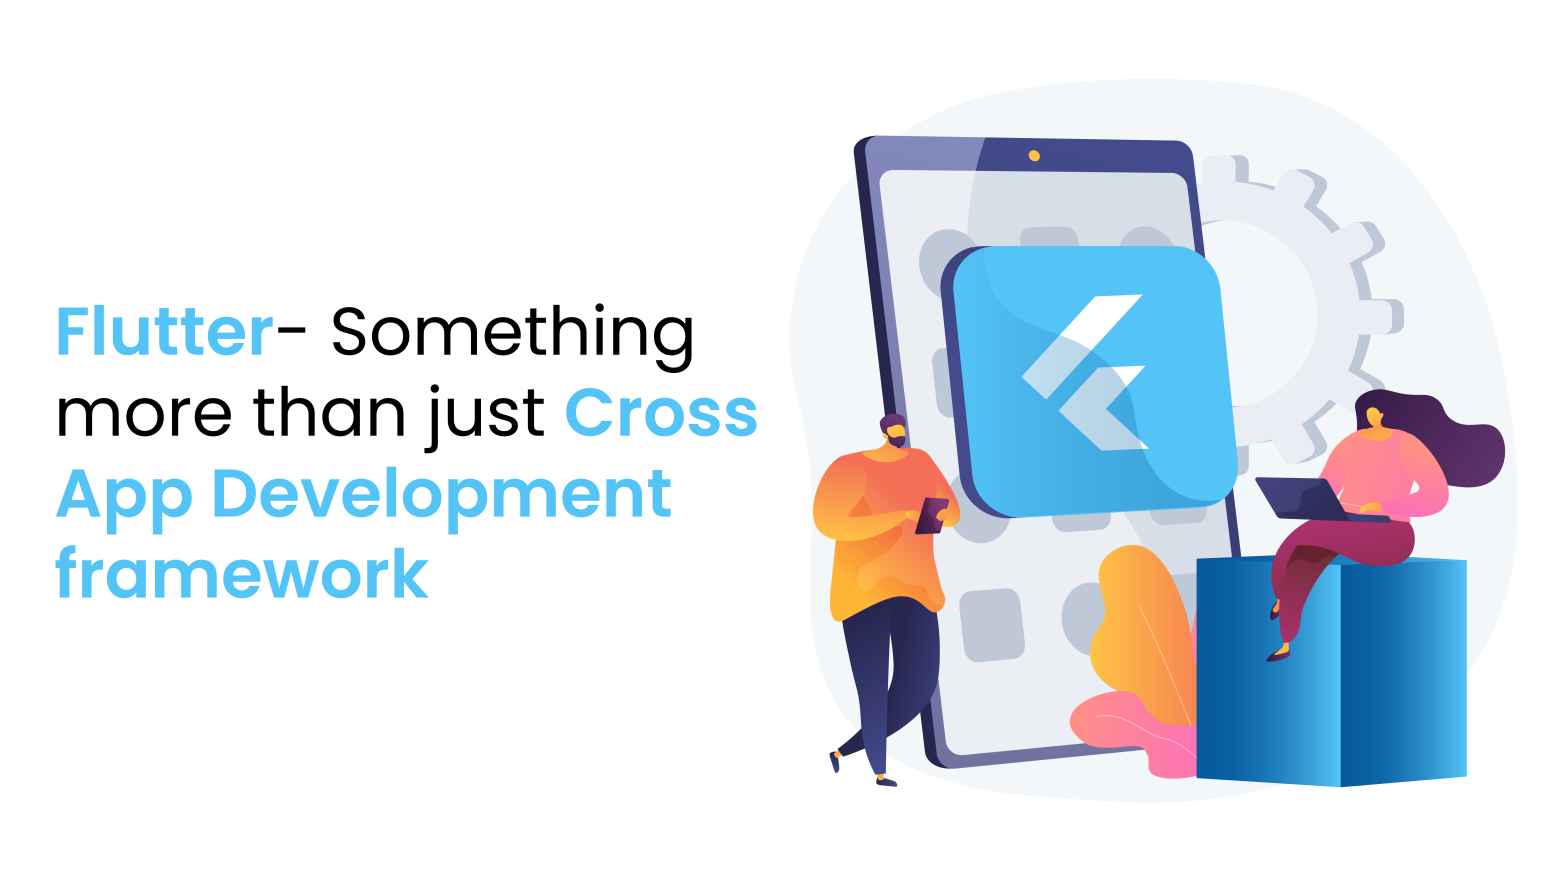 Flutter - something more just cross app development framework